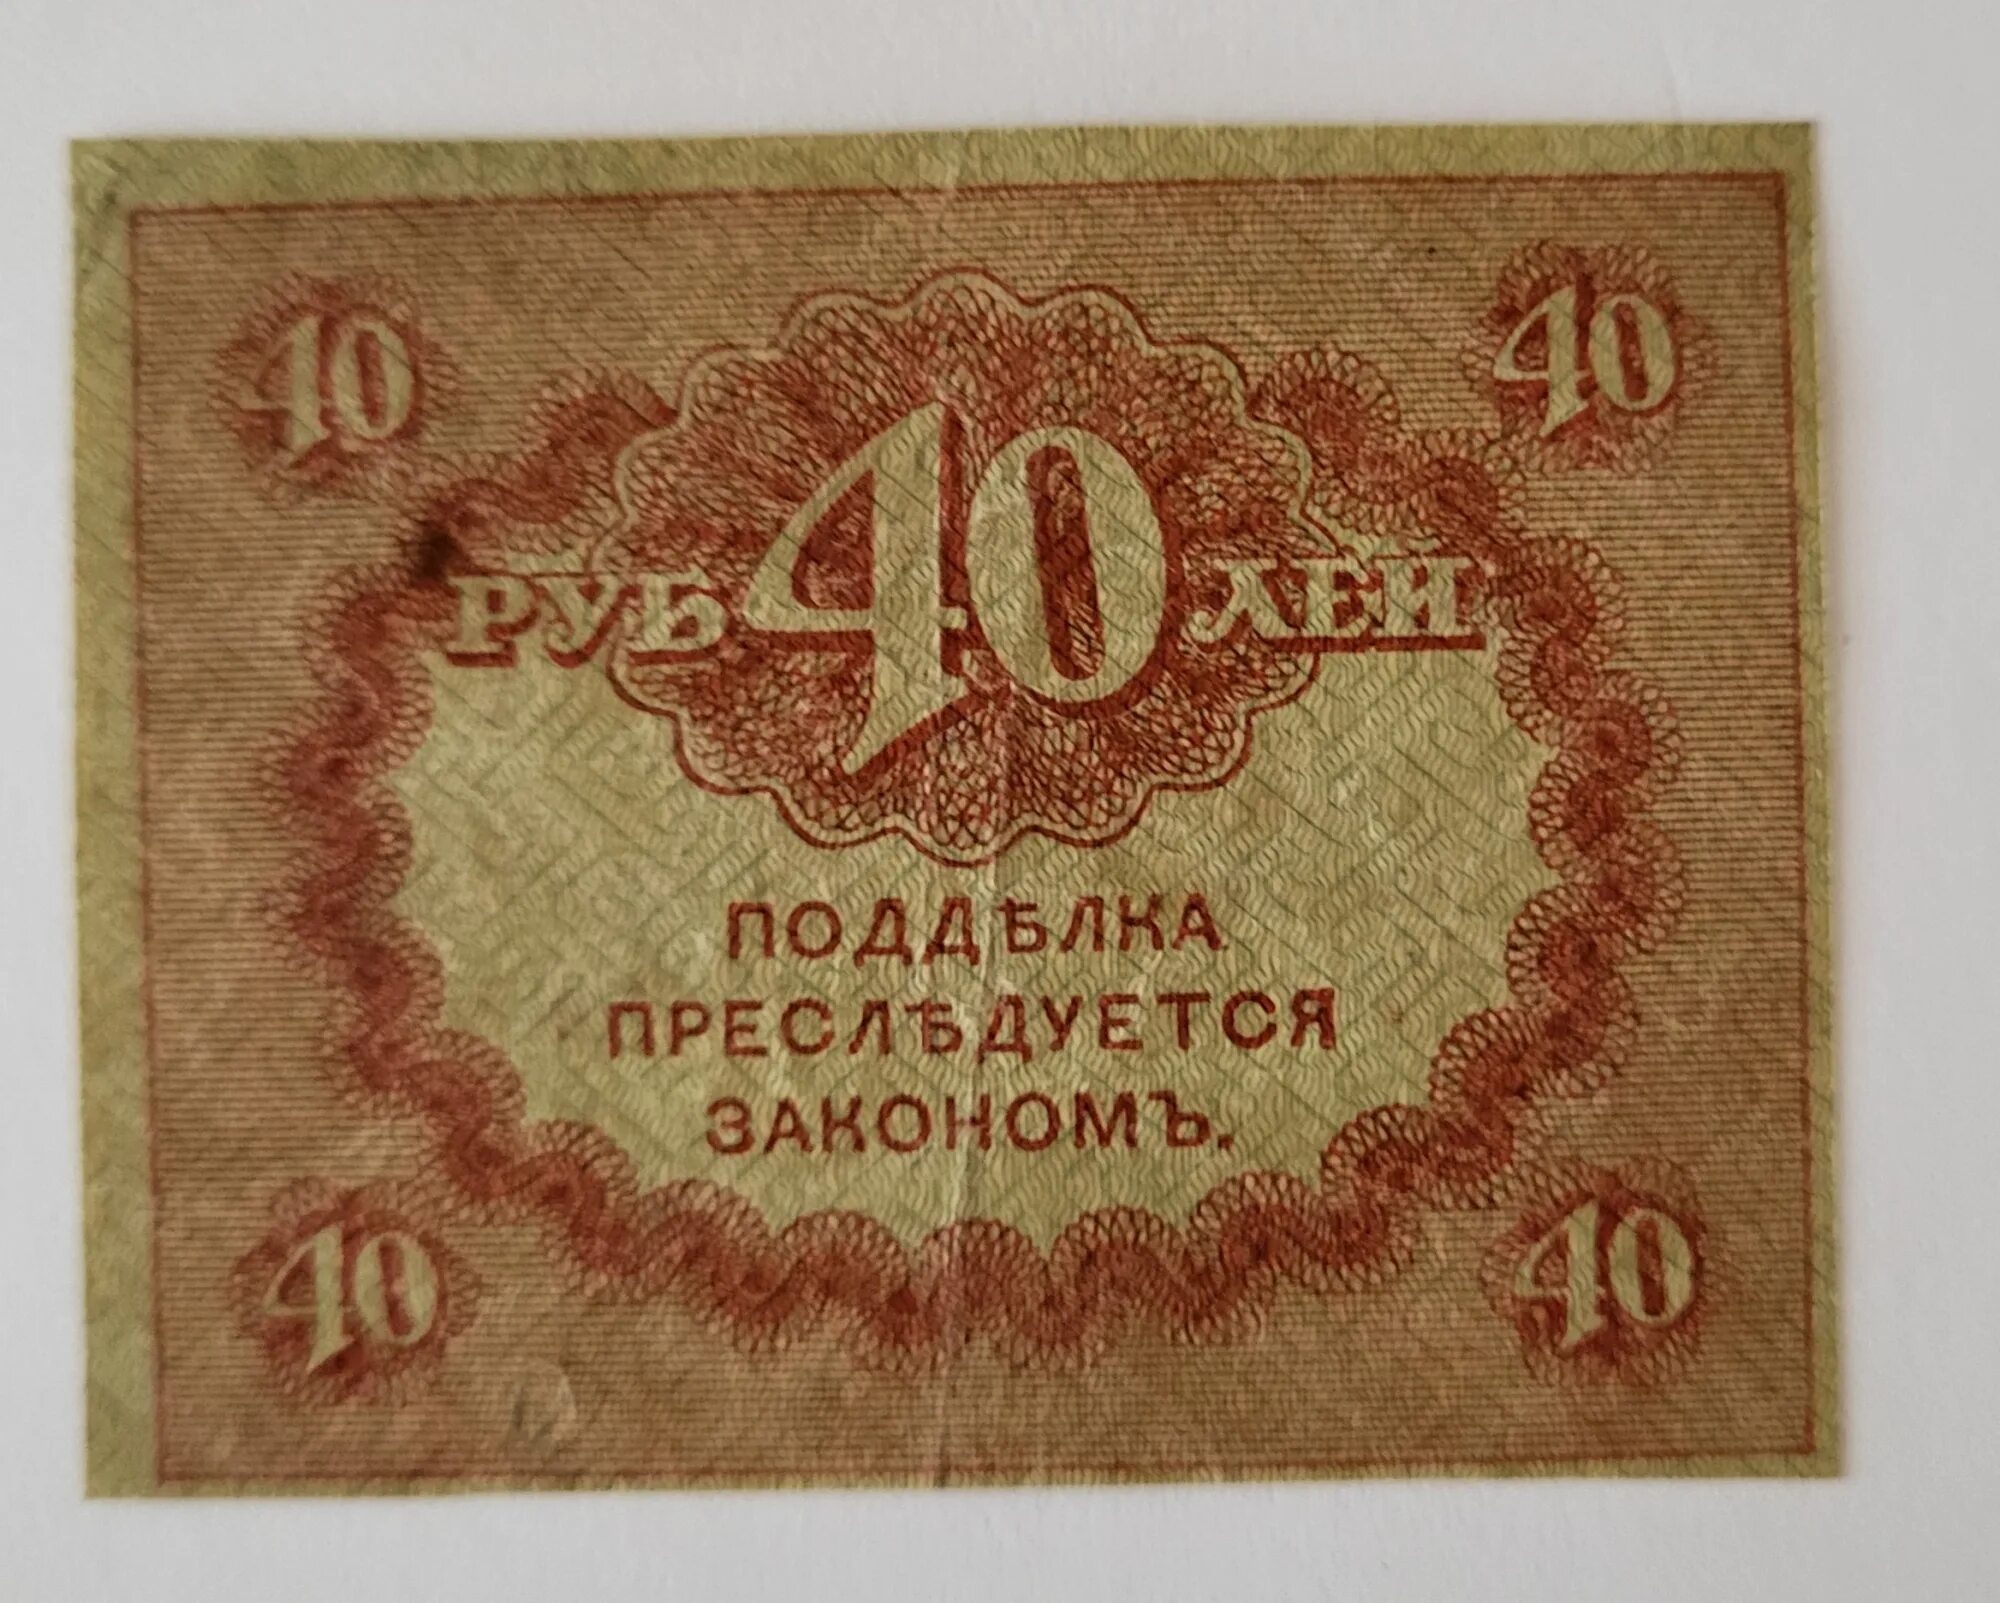 35 40 в рублях. 40 Рублей 1917. Керенка. 1 Рубль 1917 года. Купюра 40 рублей.